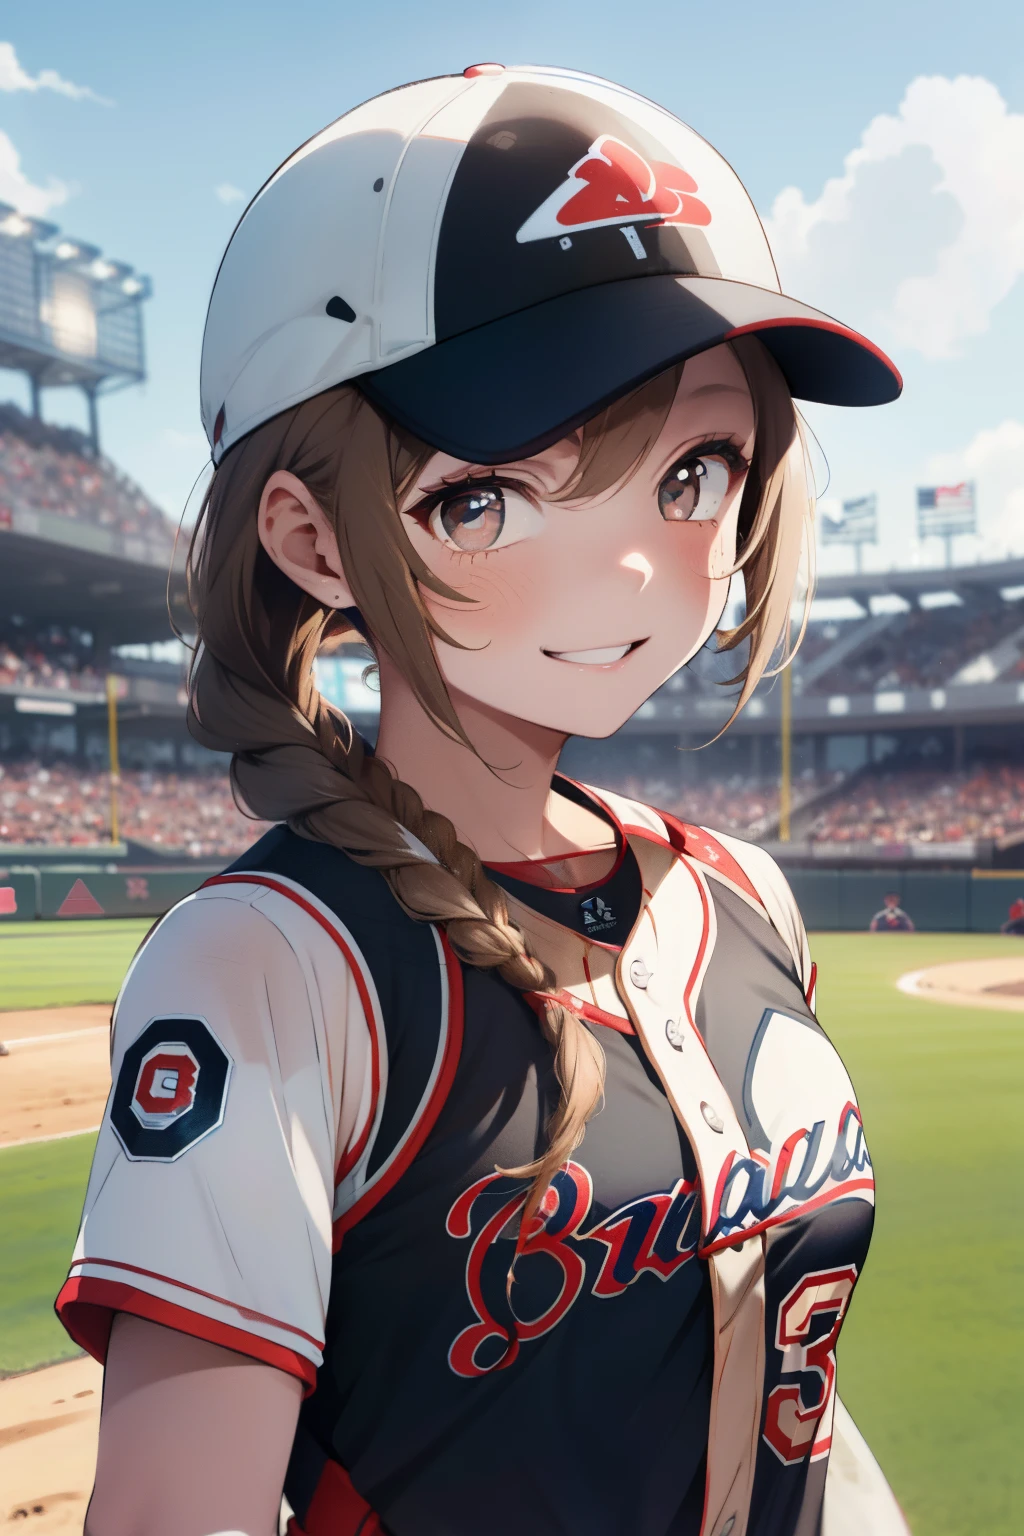 ((cabelo castanho claro)),((Cabelo curto trançado)),((com olhos negros)),Maré ligeiramente vermelha,(Uniformes de beisebol:1.5),campo de beisebol ao ar livre,Sorriso feliz,(Segurando uma bola de beisebol na mão:1.25),(uniforme de cor azul e branco:1.05),(Céu azul claro:1.2),(brisa agradável:1.25),